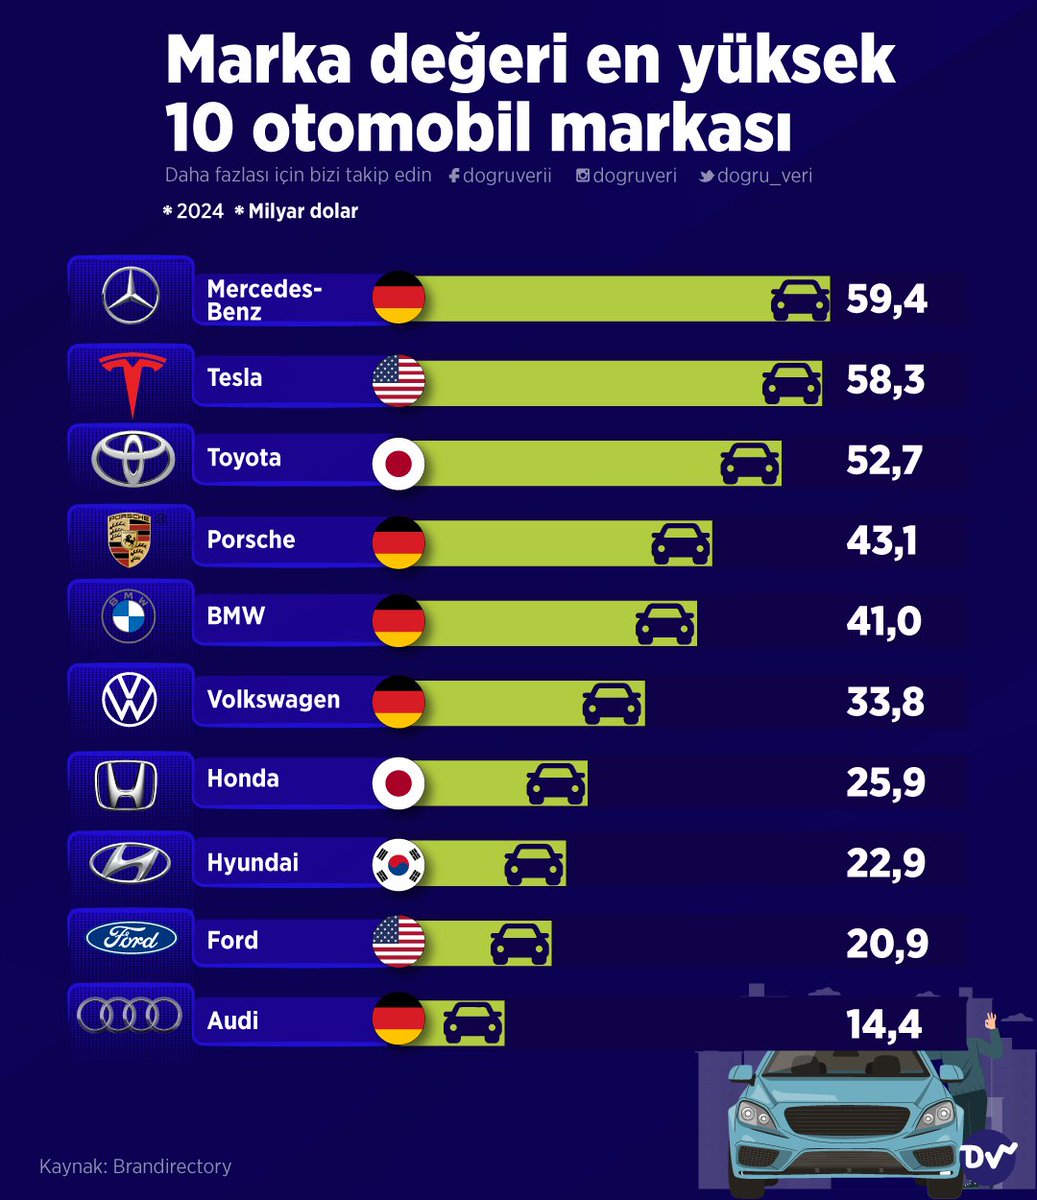 🚗 Marka değerine göre en değerli otomobilleri sıraladık. 👉 Mercedes-Benz, 59 milyar dolarlık marka değeri ile ilk sırada yer alıyor. Mercedes'i Tesla, Toyota ve Porche takip ediyor.